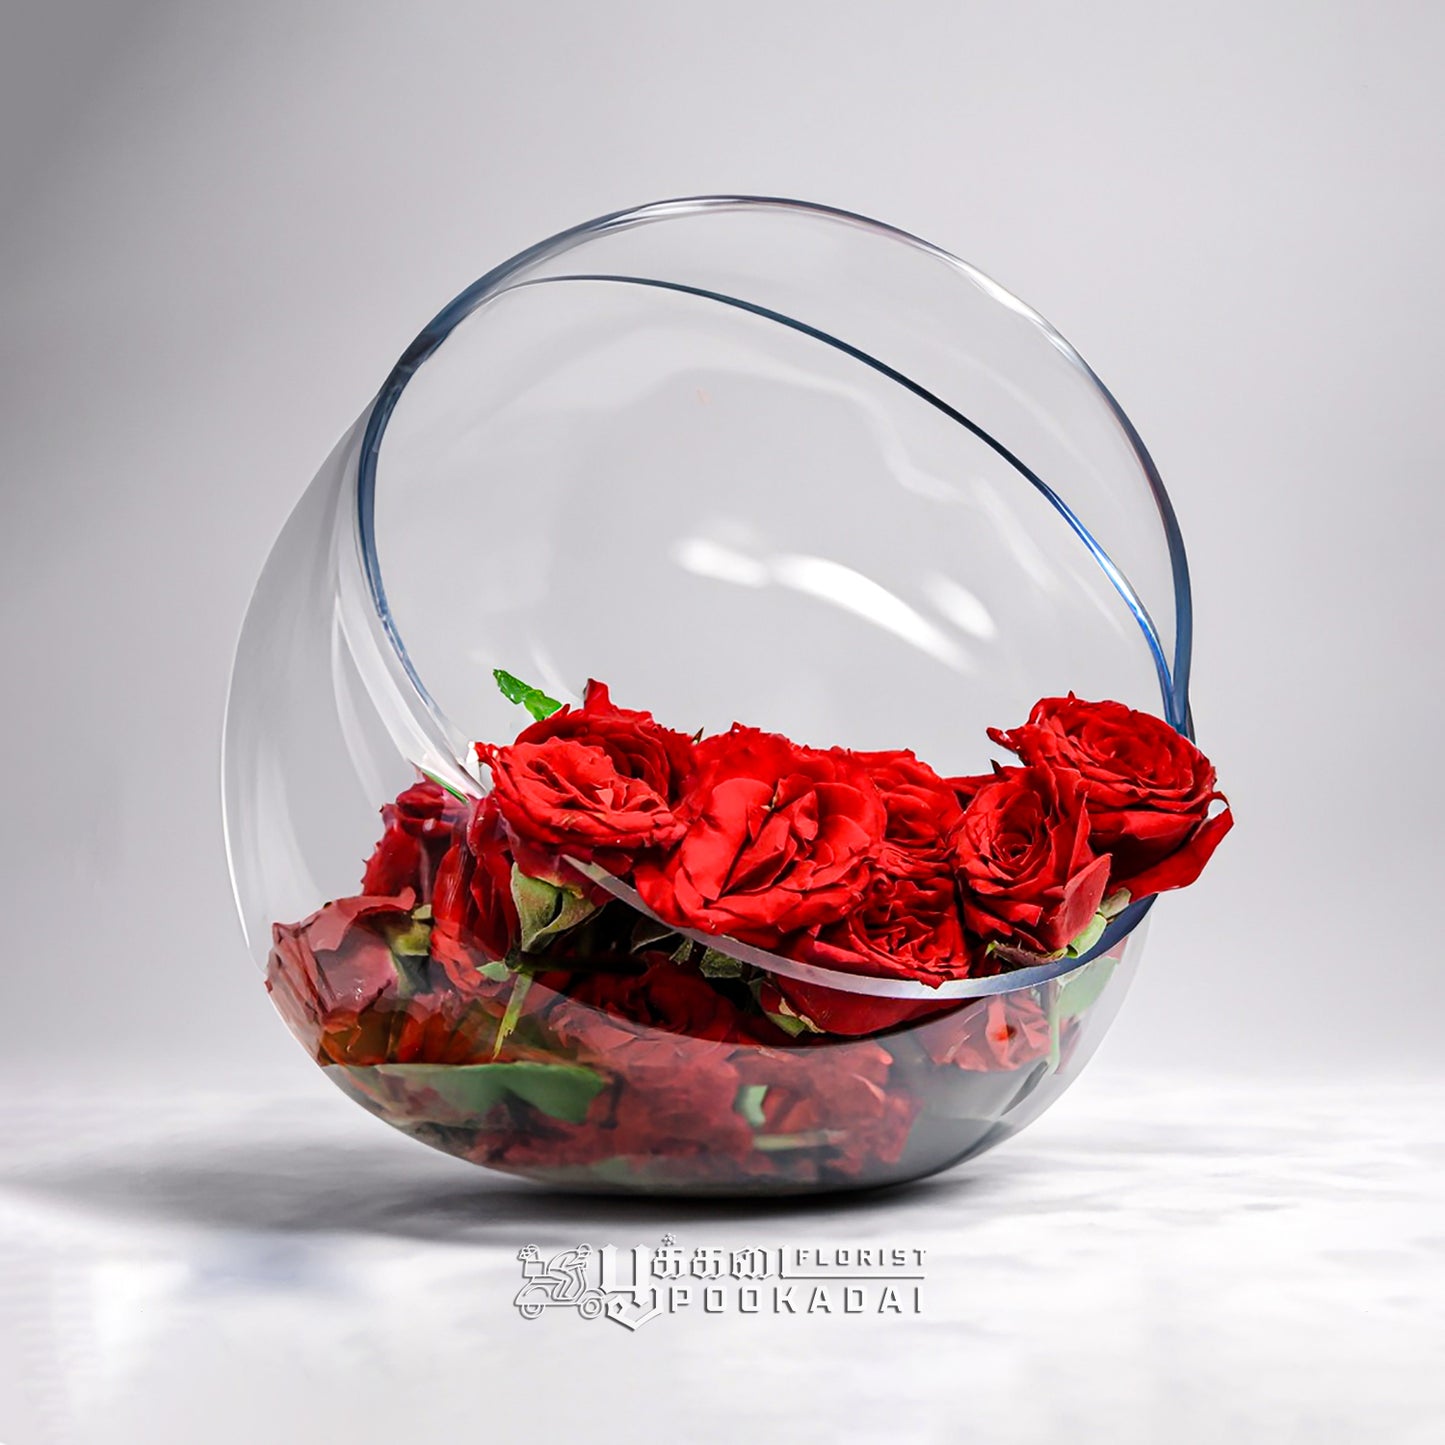 Fresh Button Roses - Pookadai Florist Toronto